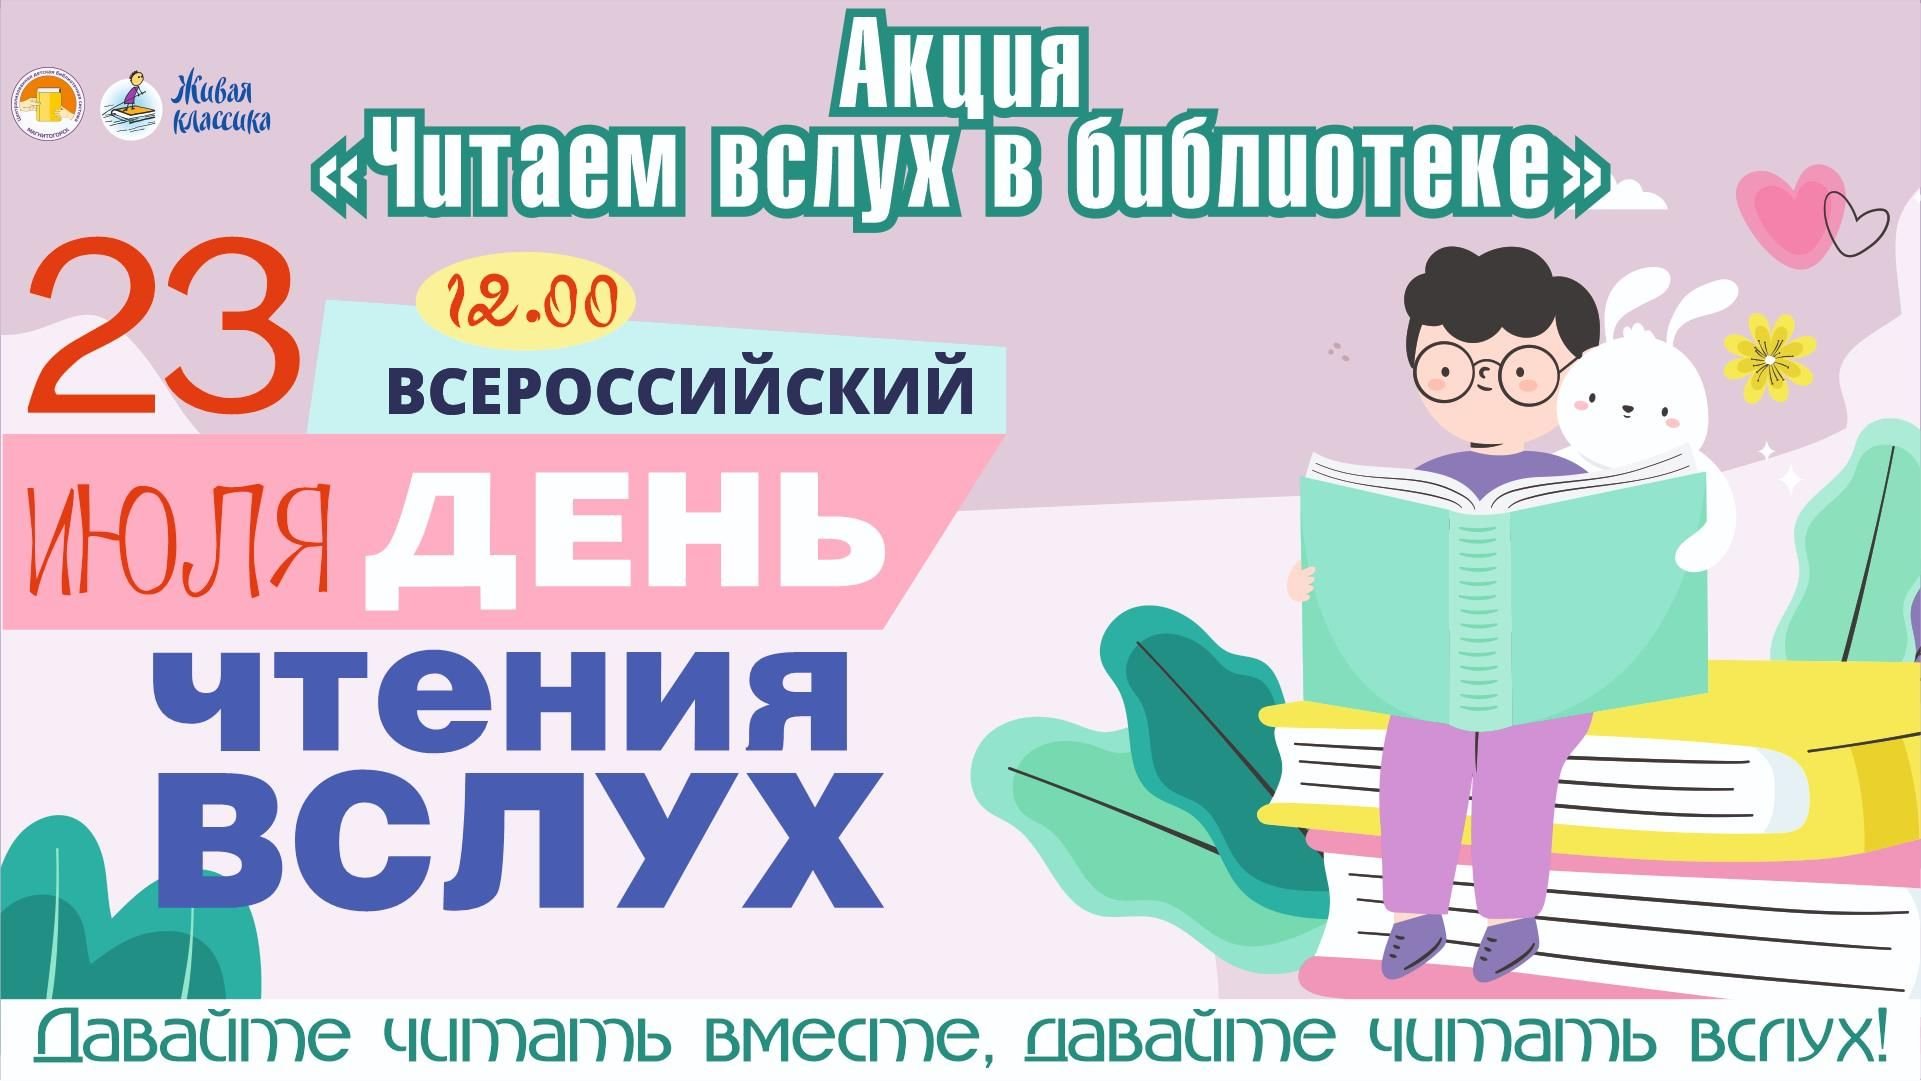 Праздник день чтения. Всероссийский день чтения. Всемирный день чтения. День чтения вслух. Акция Всемирный день чтения вслух.